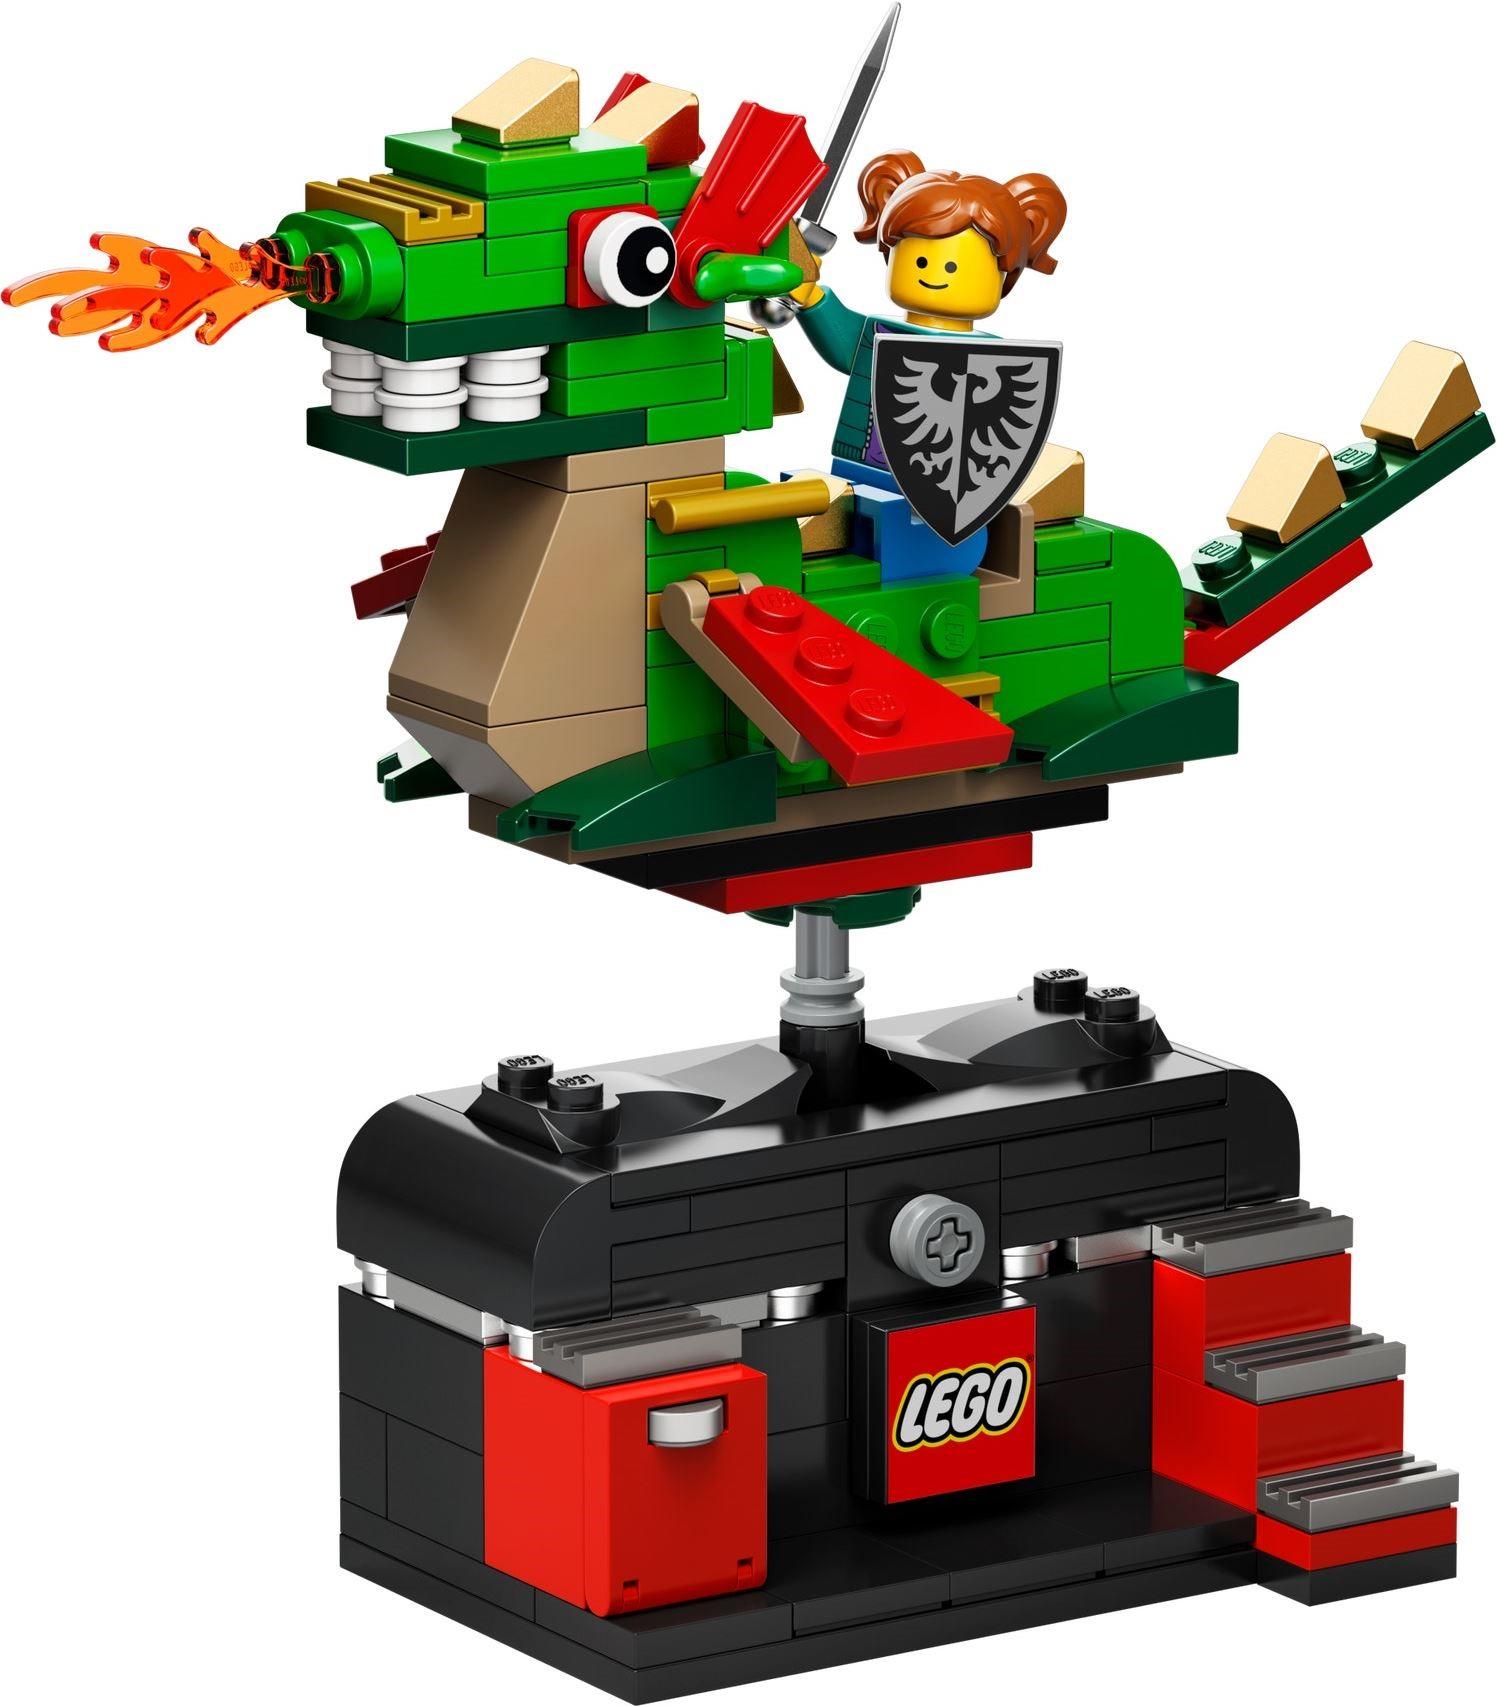 LEGO 5007428 VIP Reward Dragon Adventure Ride | BrickEconomy